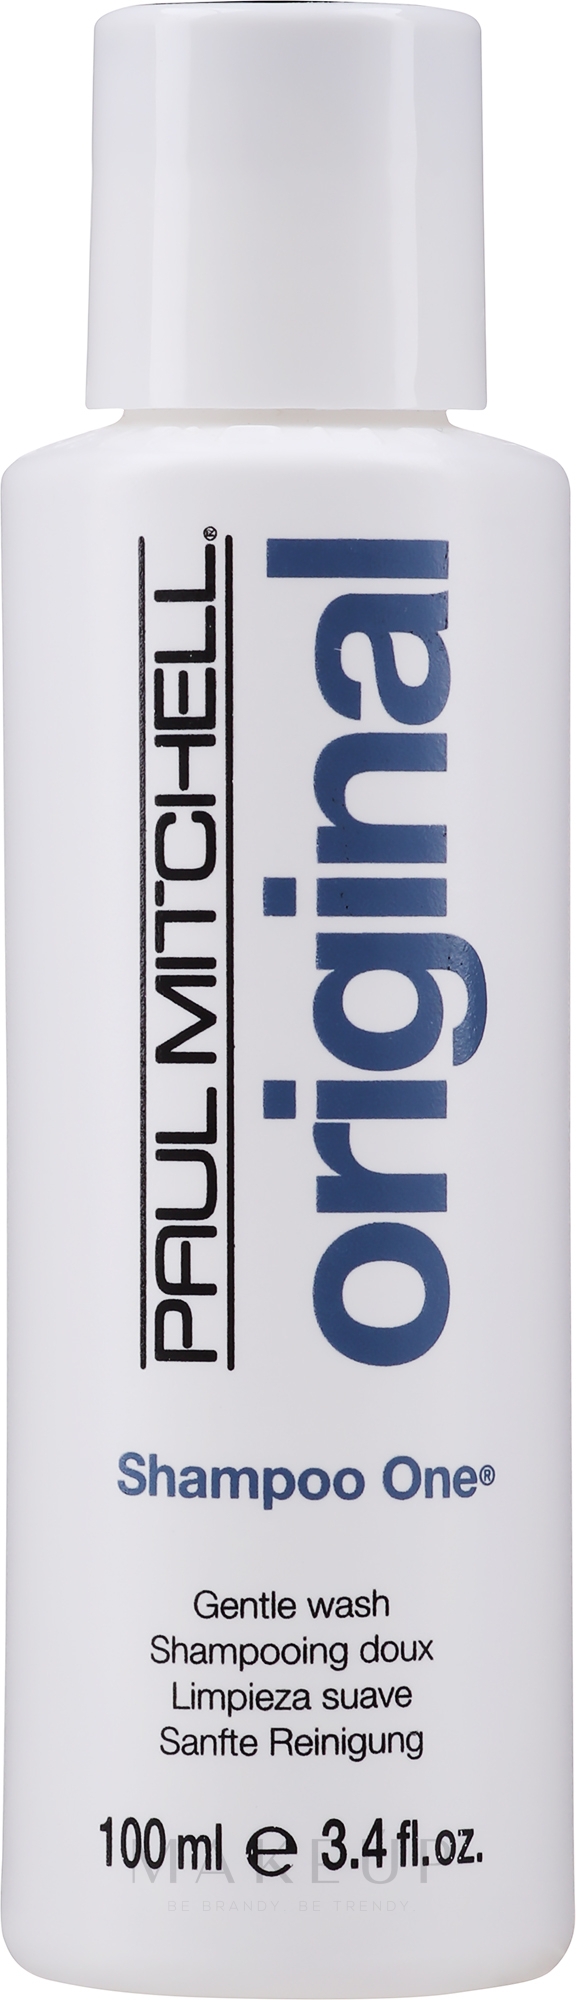 Sanftes Shampoo für normales bis leicht trockenes Haar - Paul Mitchell Original Shampoo One — Foto 100 ml